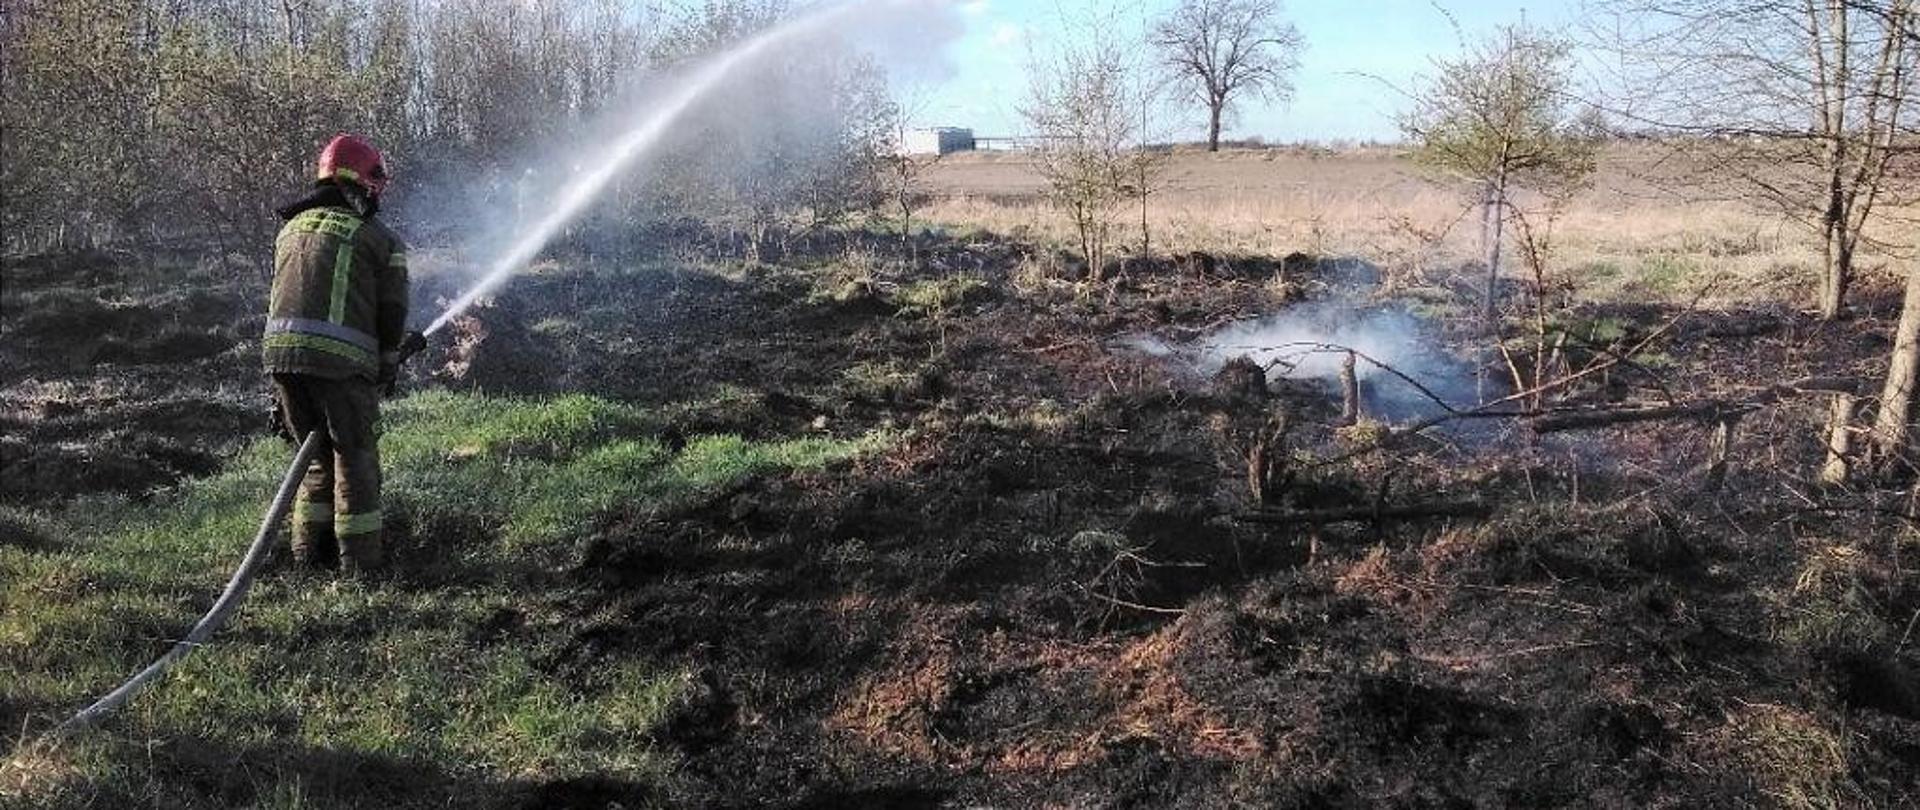 Pożar traw na nieużytkach, funkcjonariusz gaszący ogień